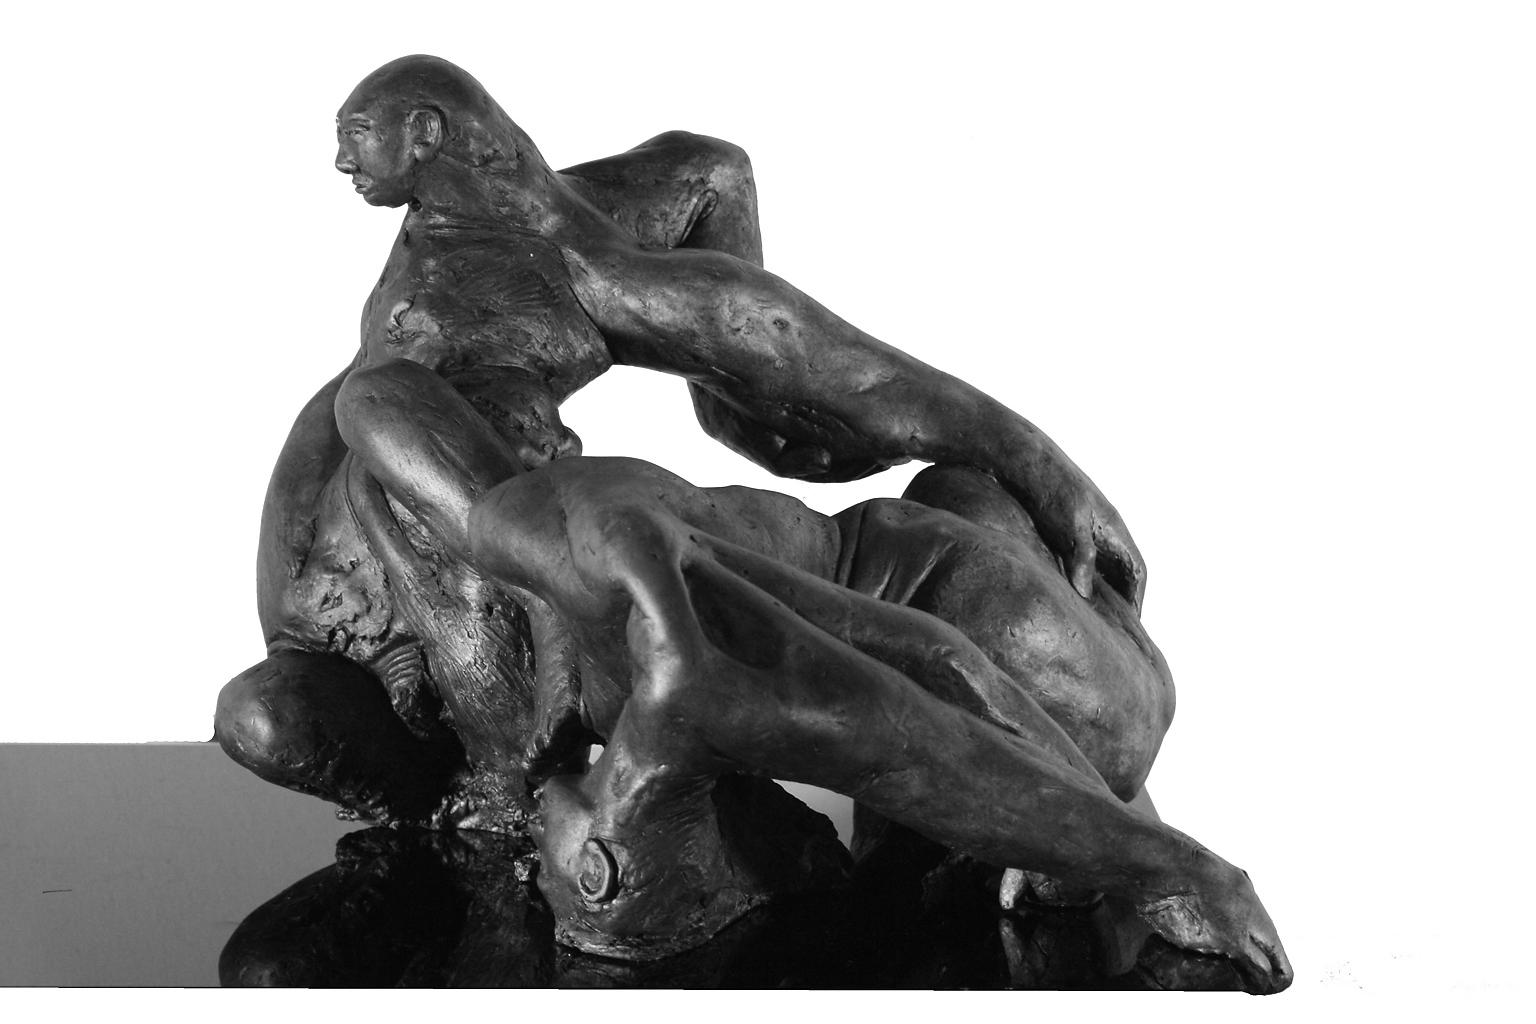 Lorenzo Vignoli Abstract Sculpture - Relazioni Amore II - contemporary Italian figurative tabletop bronze sculpture